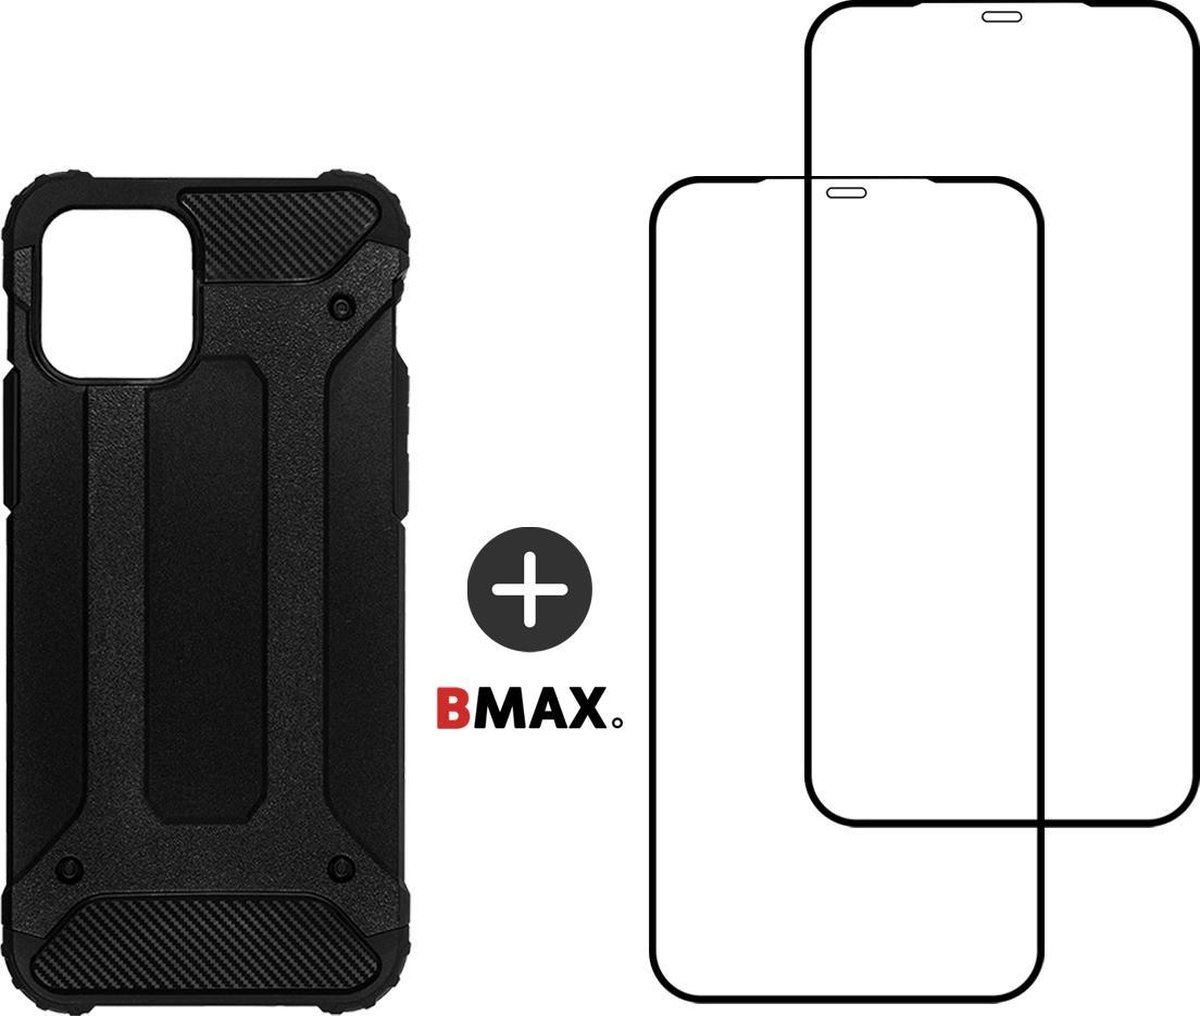 BMAX Telefoonhoesje voor iPhone 12 Mini - Classic armor hardcase hoesje zwart - Met 2 screenprotectors full cover